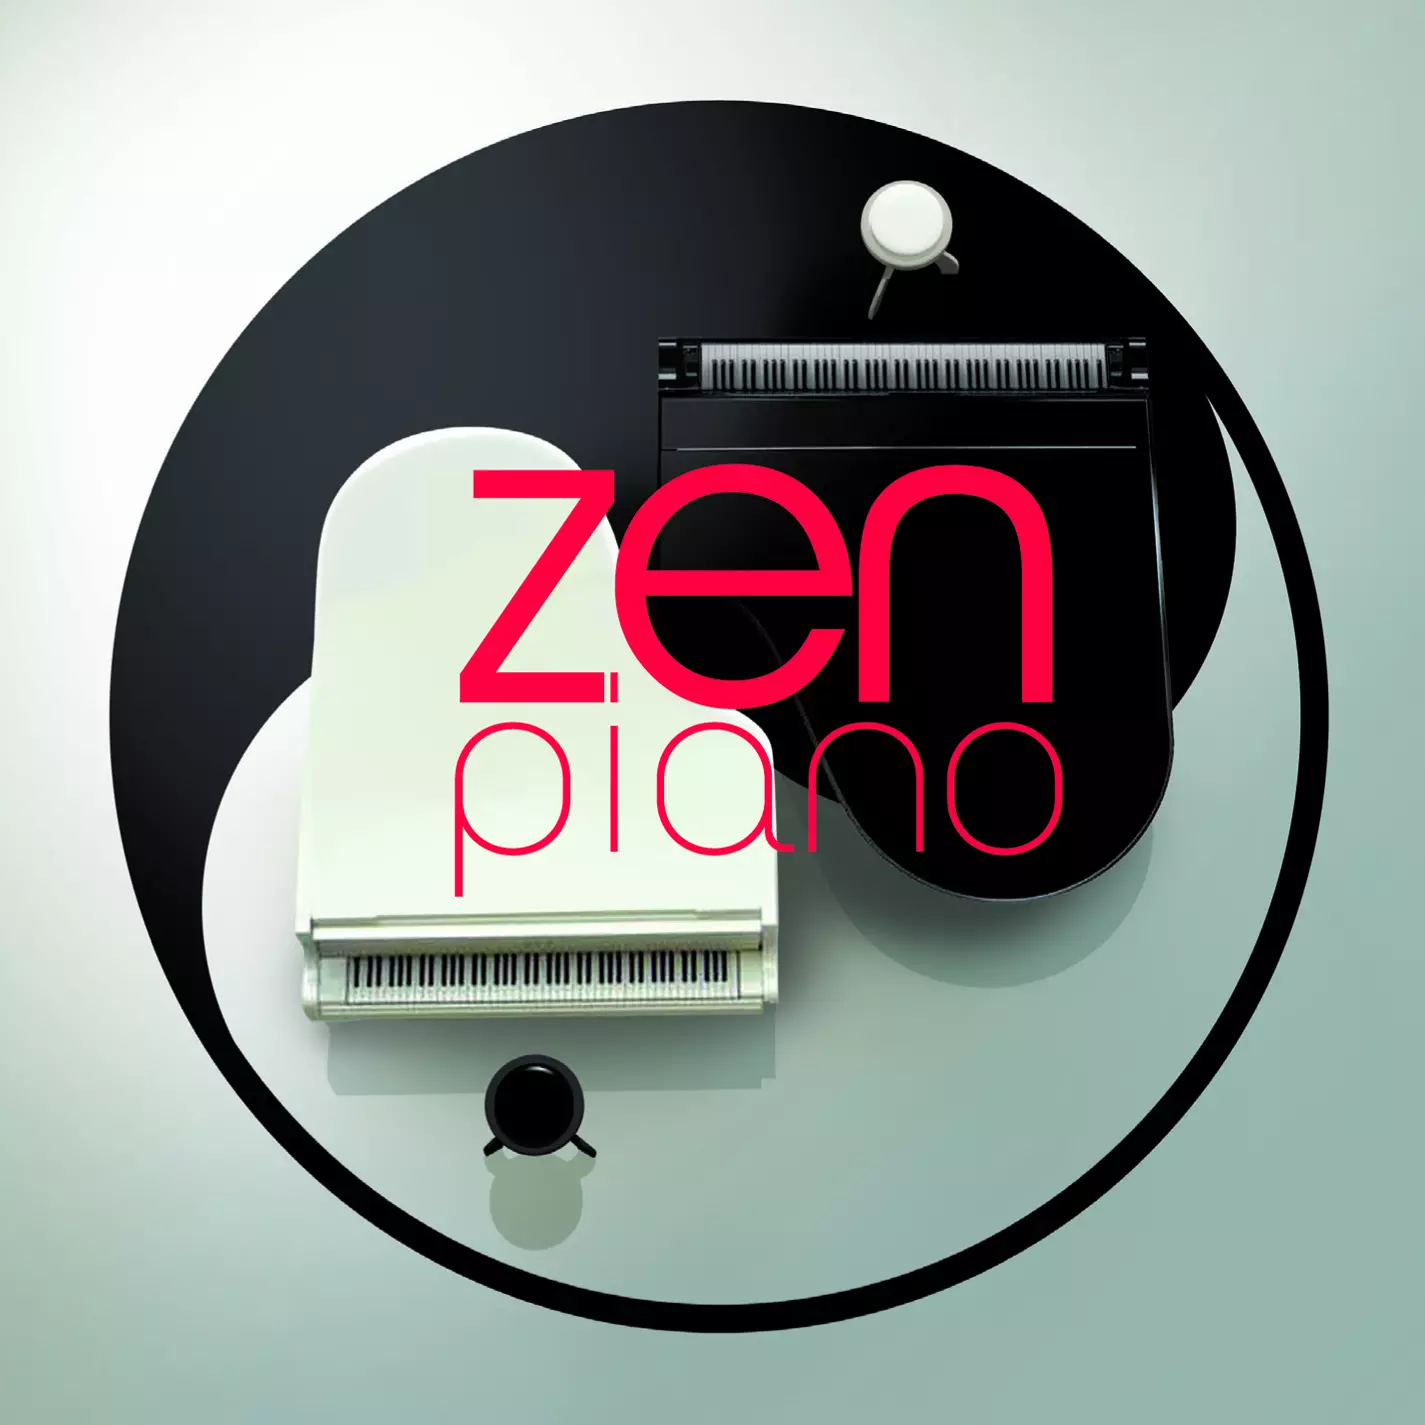 Zen piano